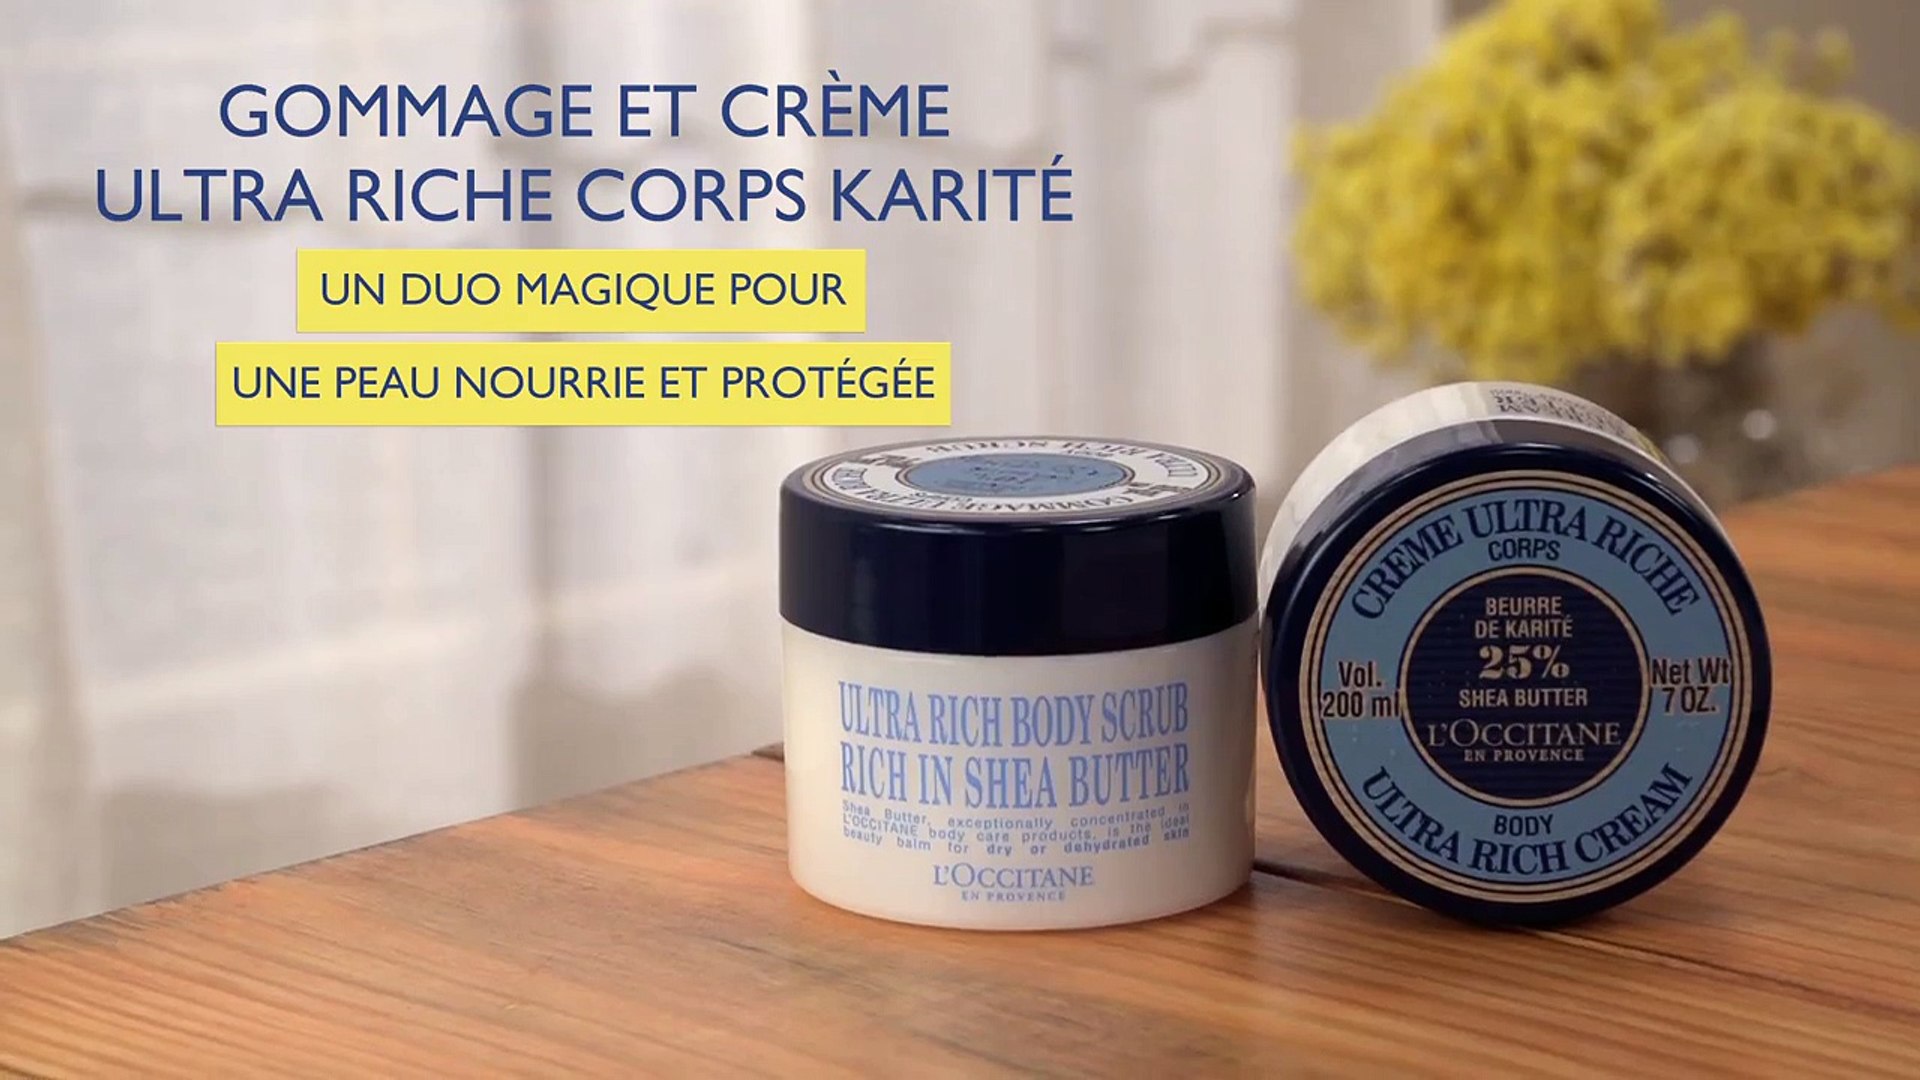 Gommage et Crème Ultra Riche Corps Karité - Conseils d'application - Vidéo  Dailymotion